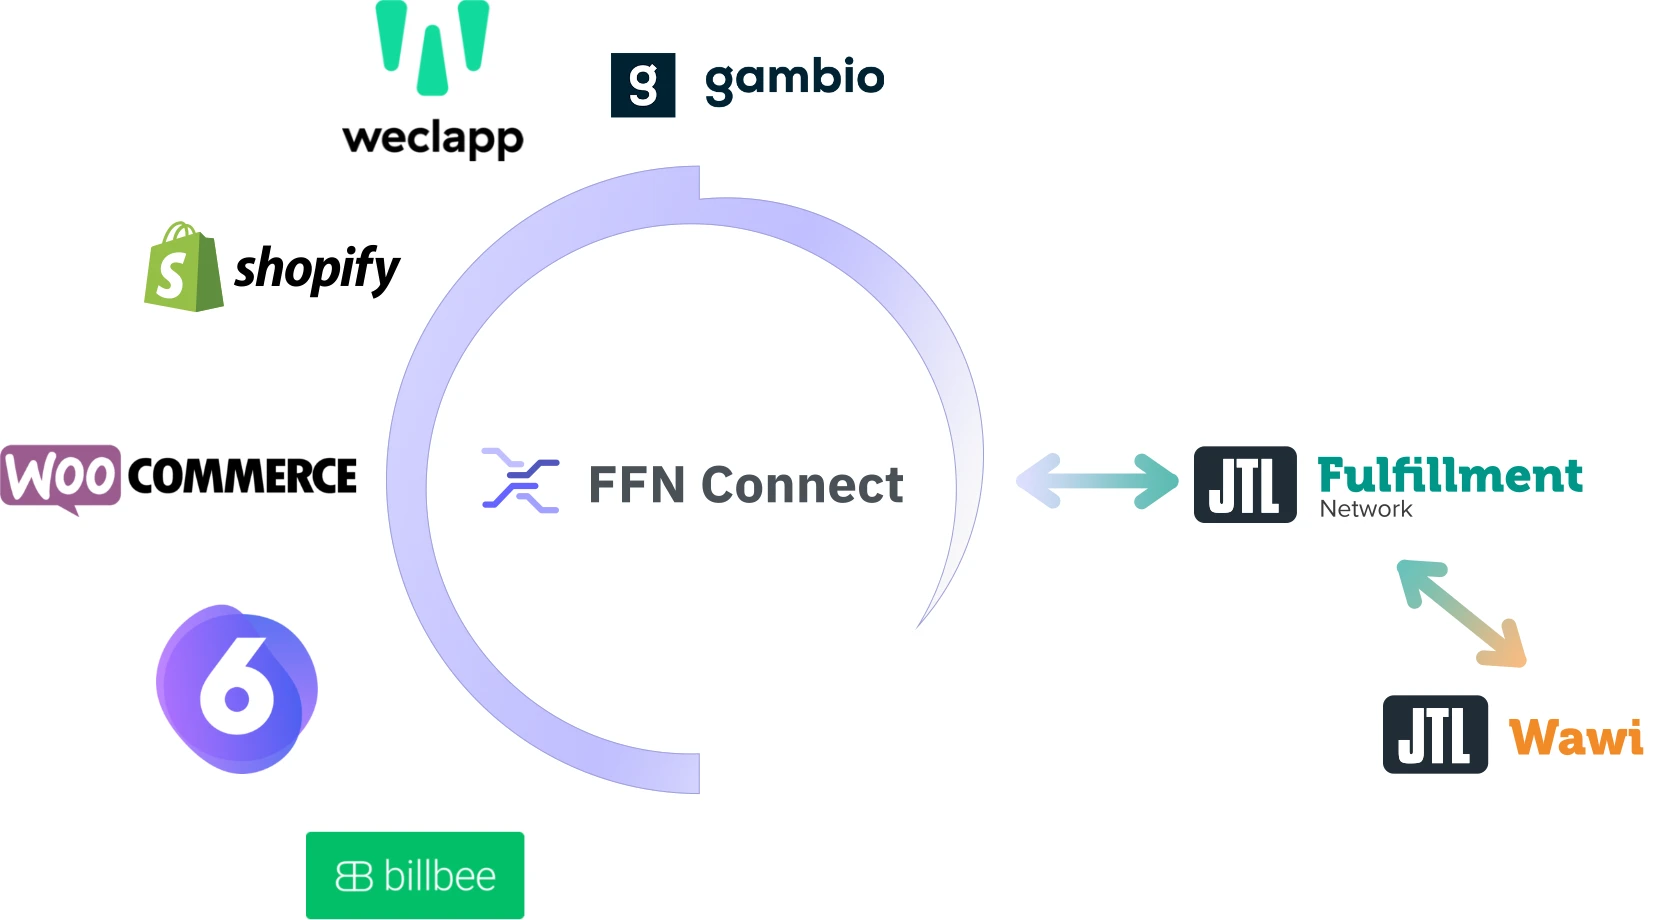 Systeme über FFN Connect mit JTL-FFN verbinden